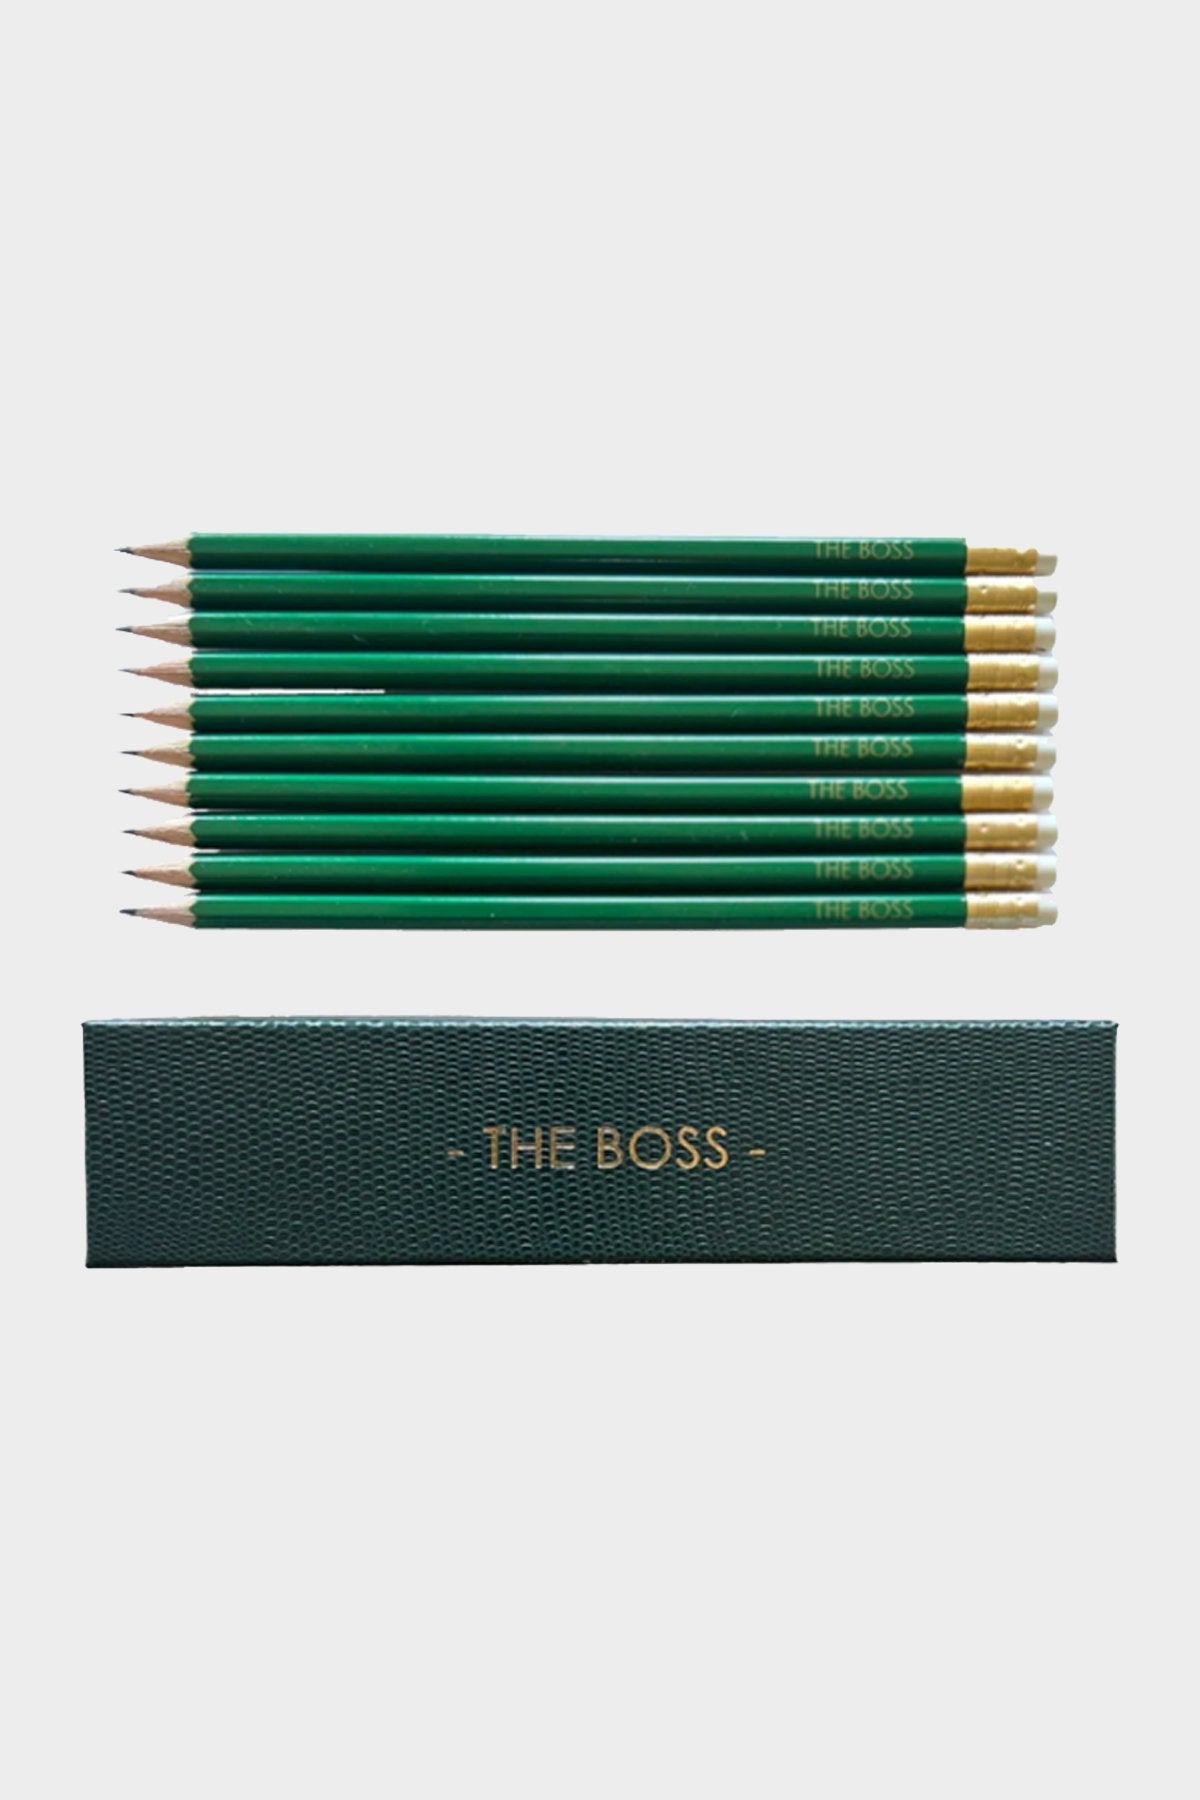 Pencils The Boss - shop-olivia.com